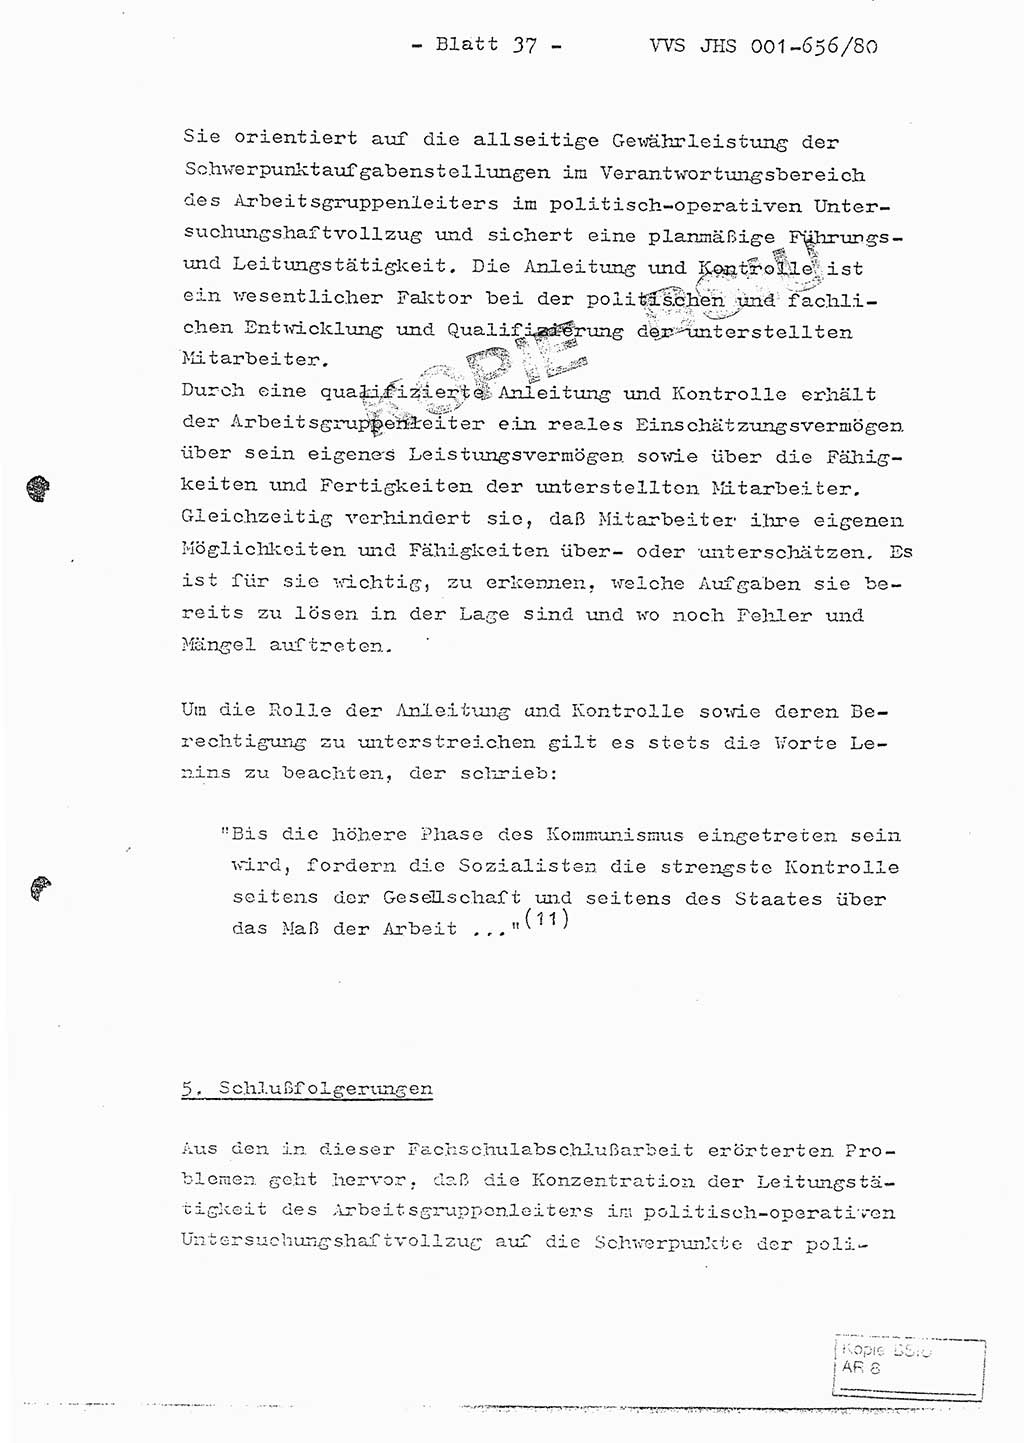 Fachschulabschlußarbeit Unterleutnant Christian Kätzel (Abt. ⅩⅣ), Ministerium für Staatssicherheit (MfS) [Deutsche Demokratische Republik (DDR)], Juristische Hochschule (JHS), Vertrauliche Verschlußsache (VVS) 001-656/80, Potsdam 1980, Blatt 37 (FS-Abschl.-Arb. MfS DDR JHS VVS 001-656/80 1980, Bl. 37)